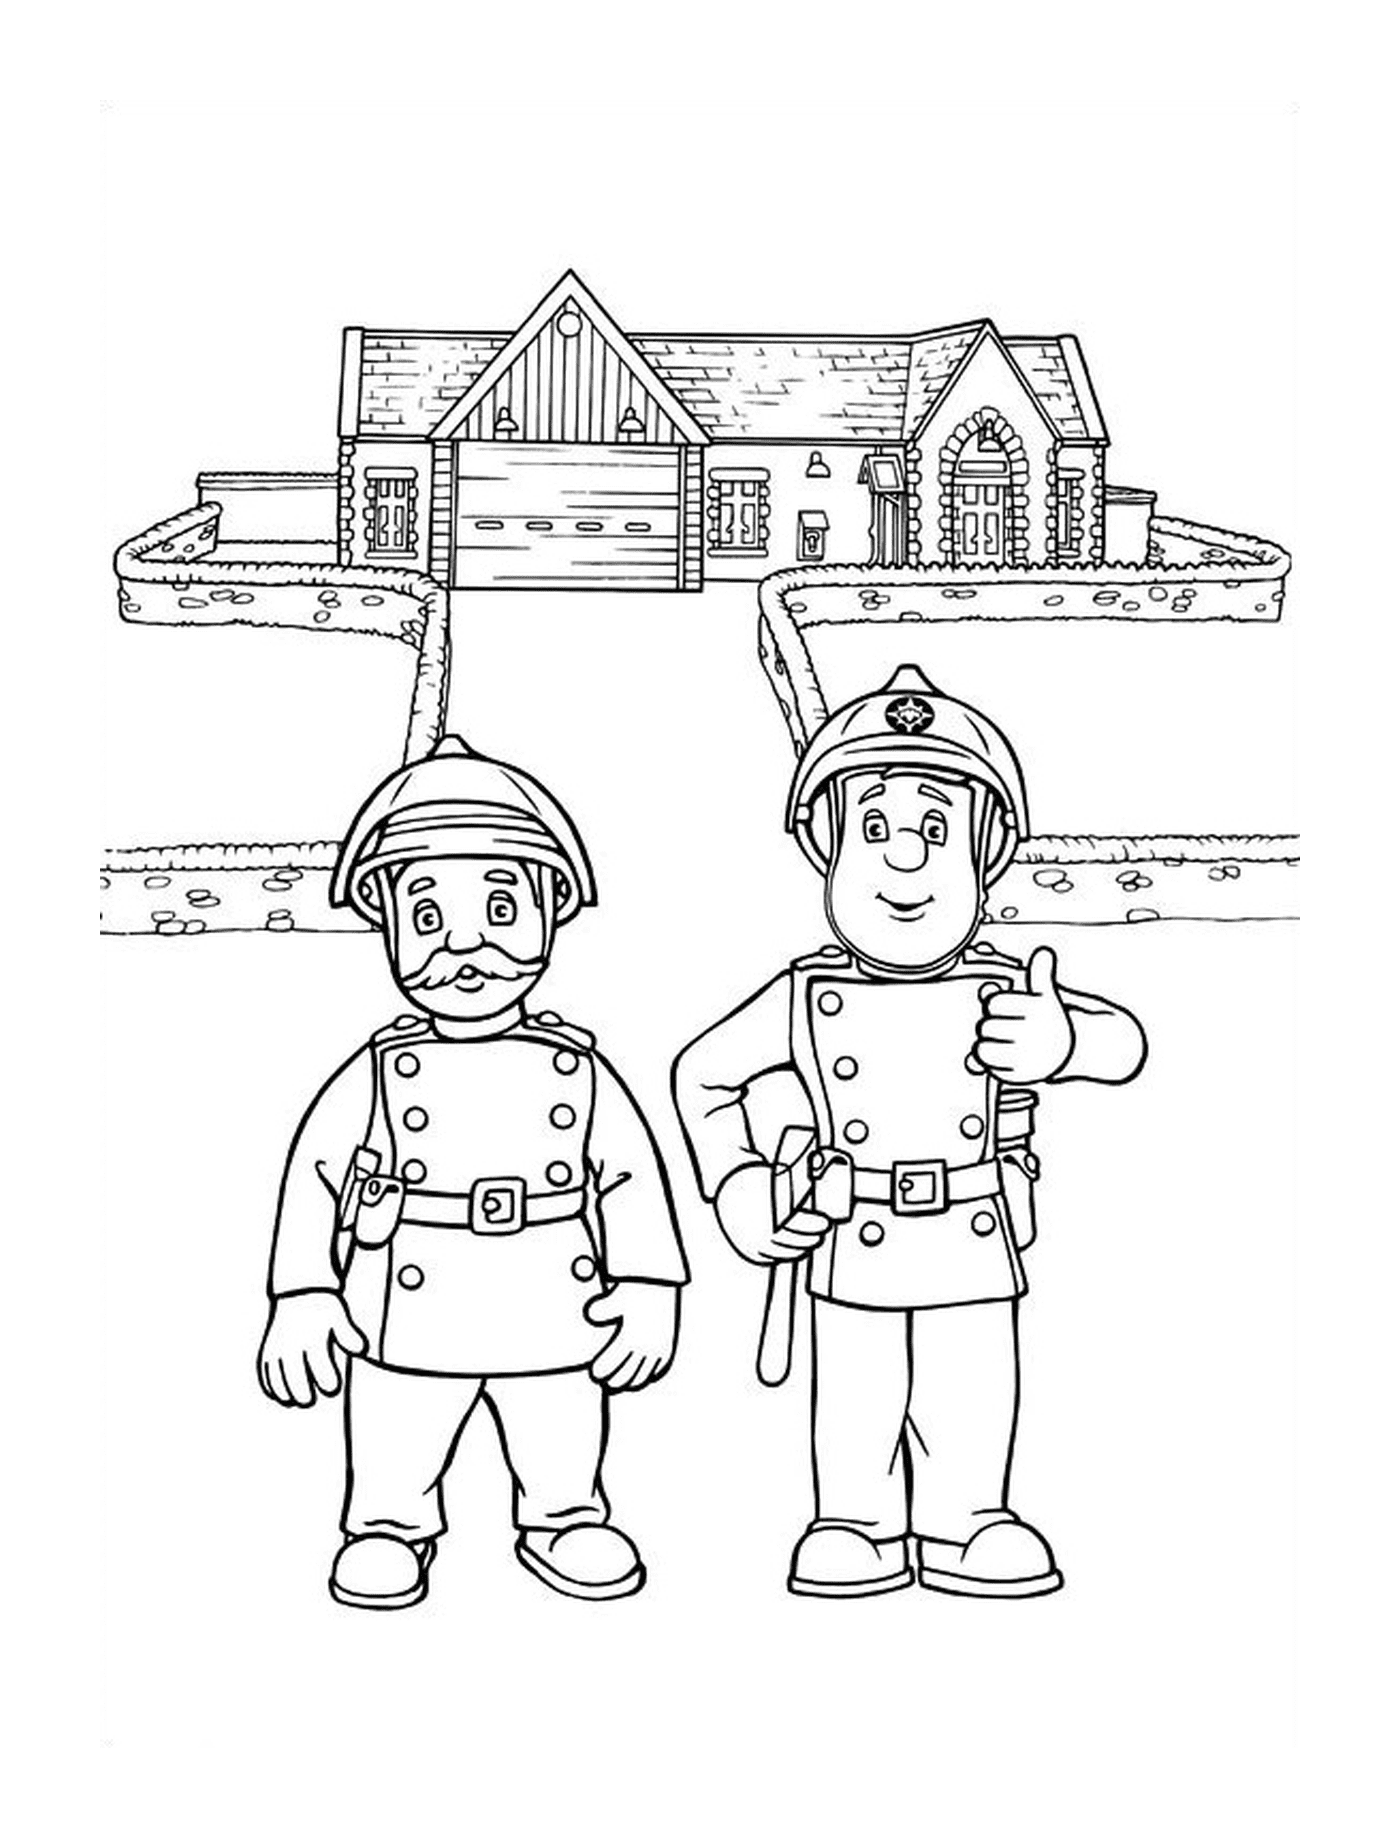  Feuerwehrmann und sein Anführer 